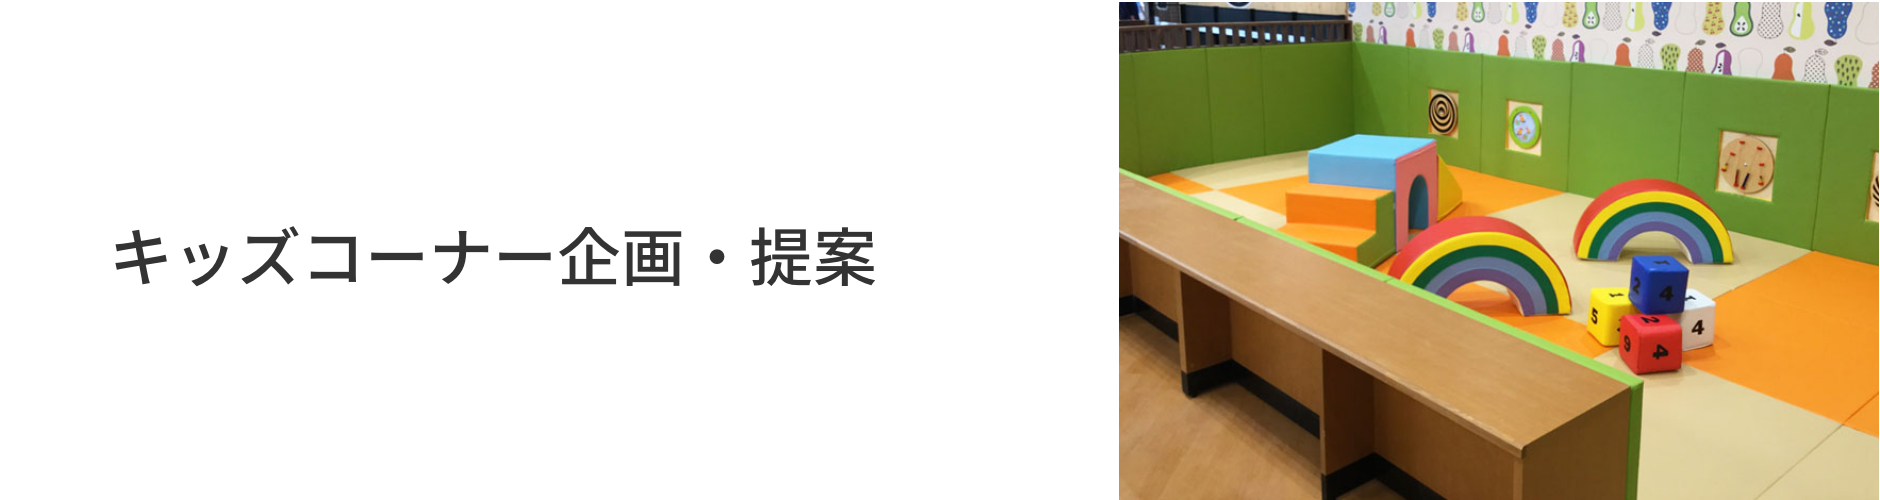 キッズコーナー キッズスペースの企画 製作 施工 設営なら高田紙器株式会社 大阪 東京